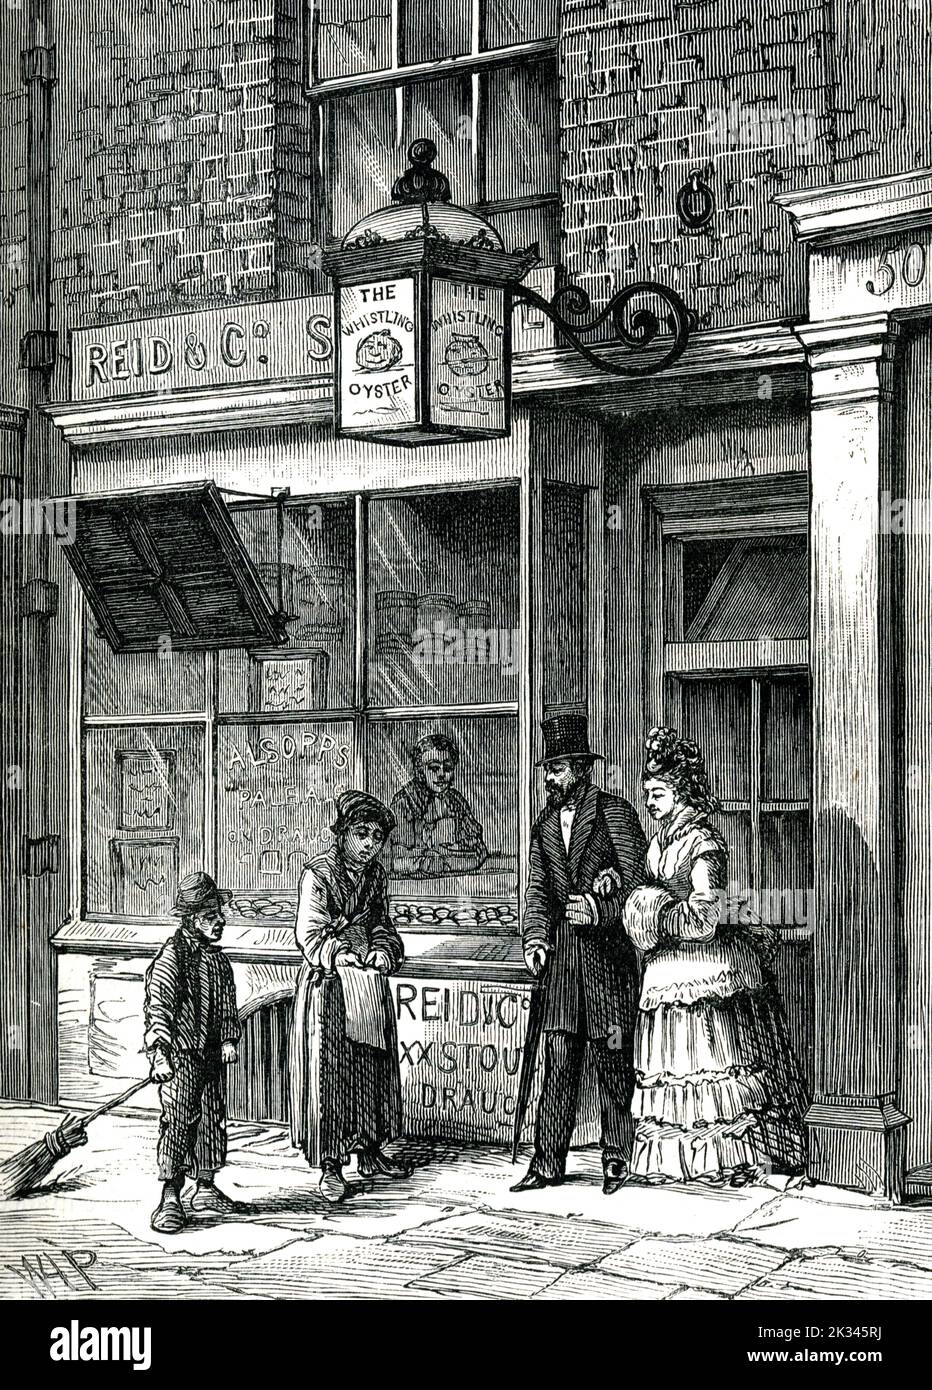 Pub in Covent Garden benannt nach einer pfeifenden Oyster, die im Pub verkauft wurde, Drury Lane Covent Garden 19. Century Illustration London Stockfoto